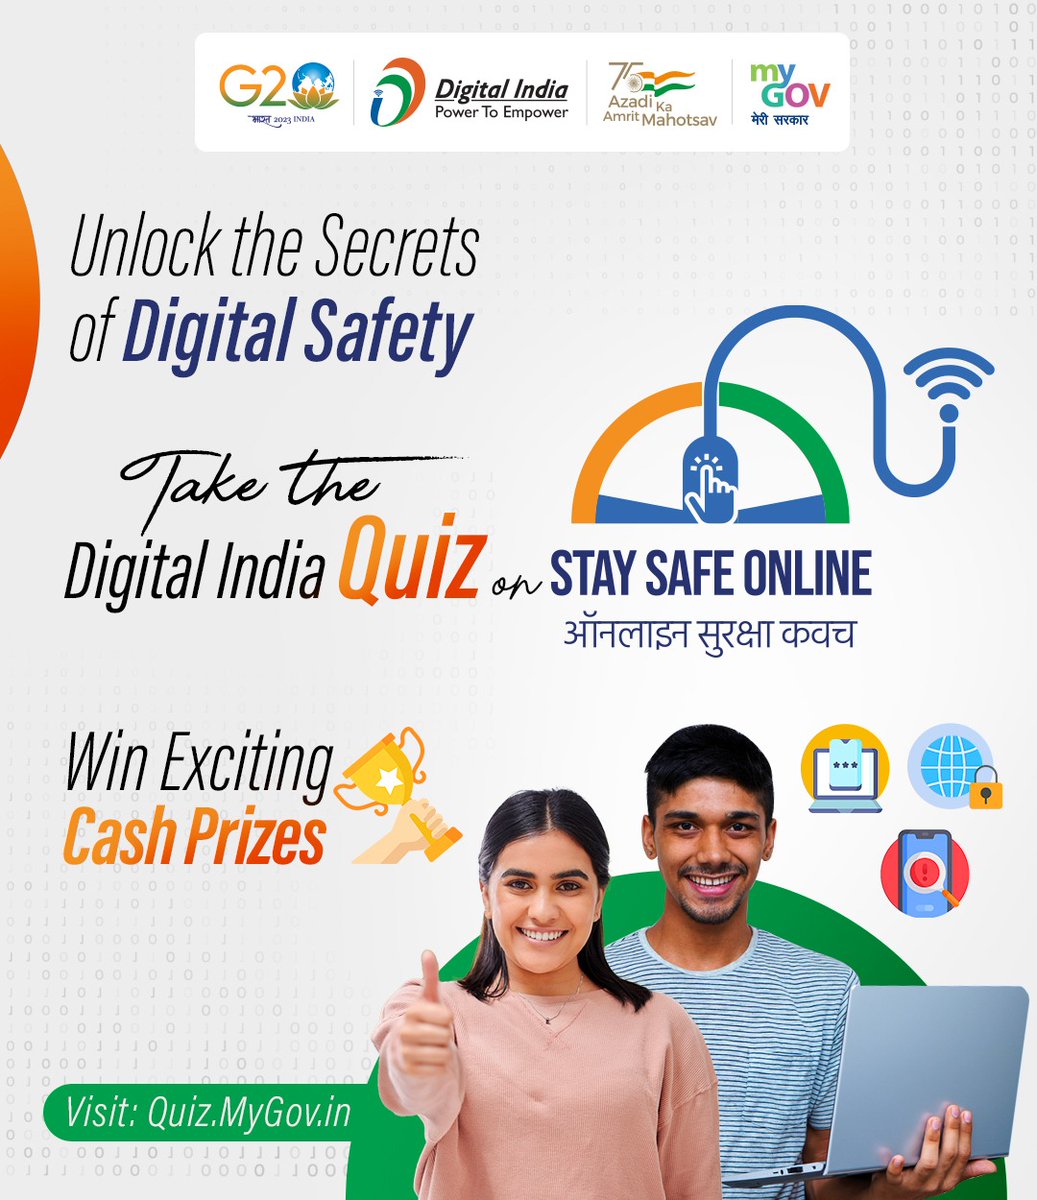 सायबर ज्ञान वाढवत डिजिटल जगतात सतर्क राहा ! 🛡️💻

#MyGov च्या  #DigitalIndiaQuiz उपक्रमात सहभागी व्हा 

भेट द्या: quiz.mygov.in/quiz/digital-i…

#StaySafeOnline